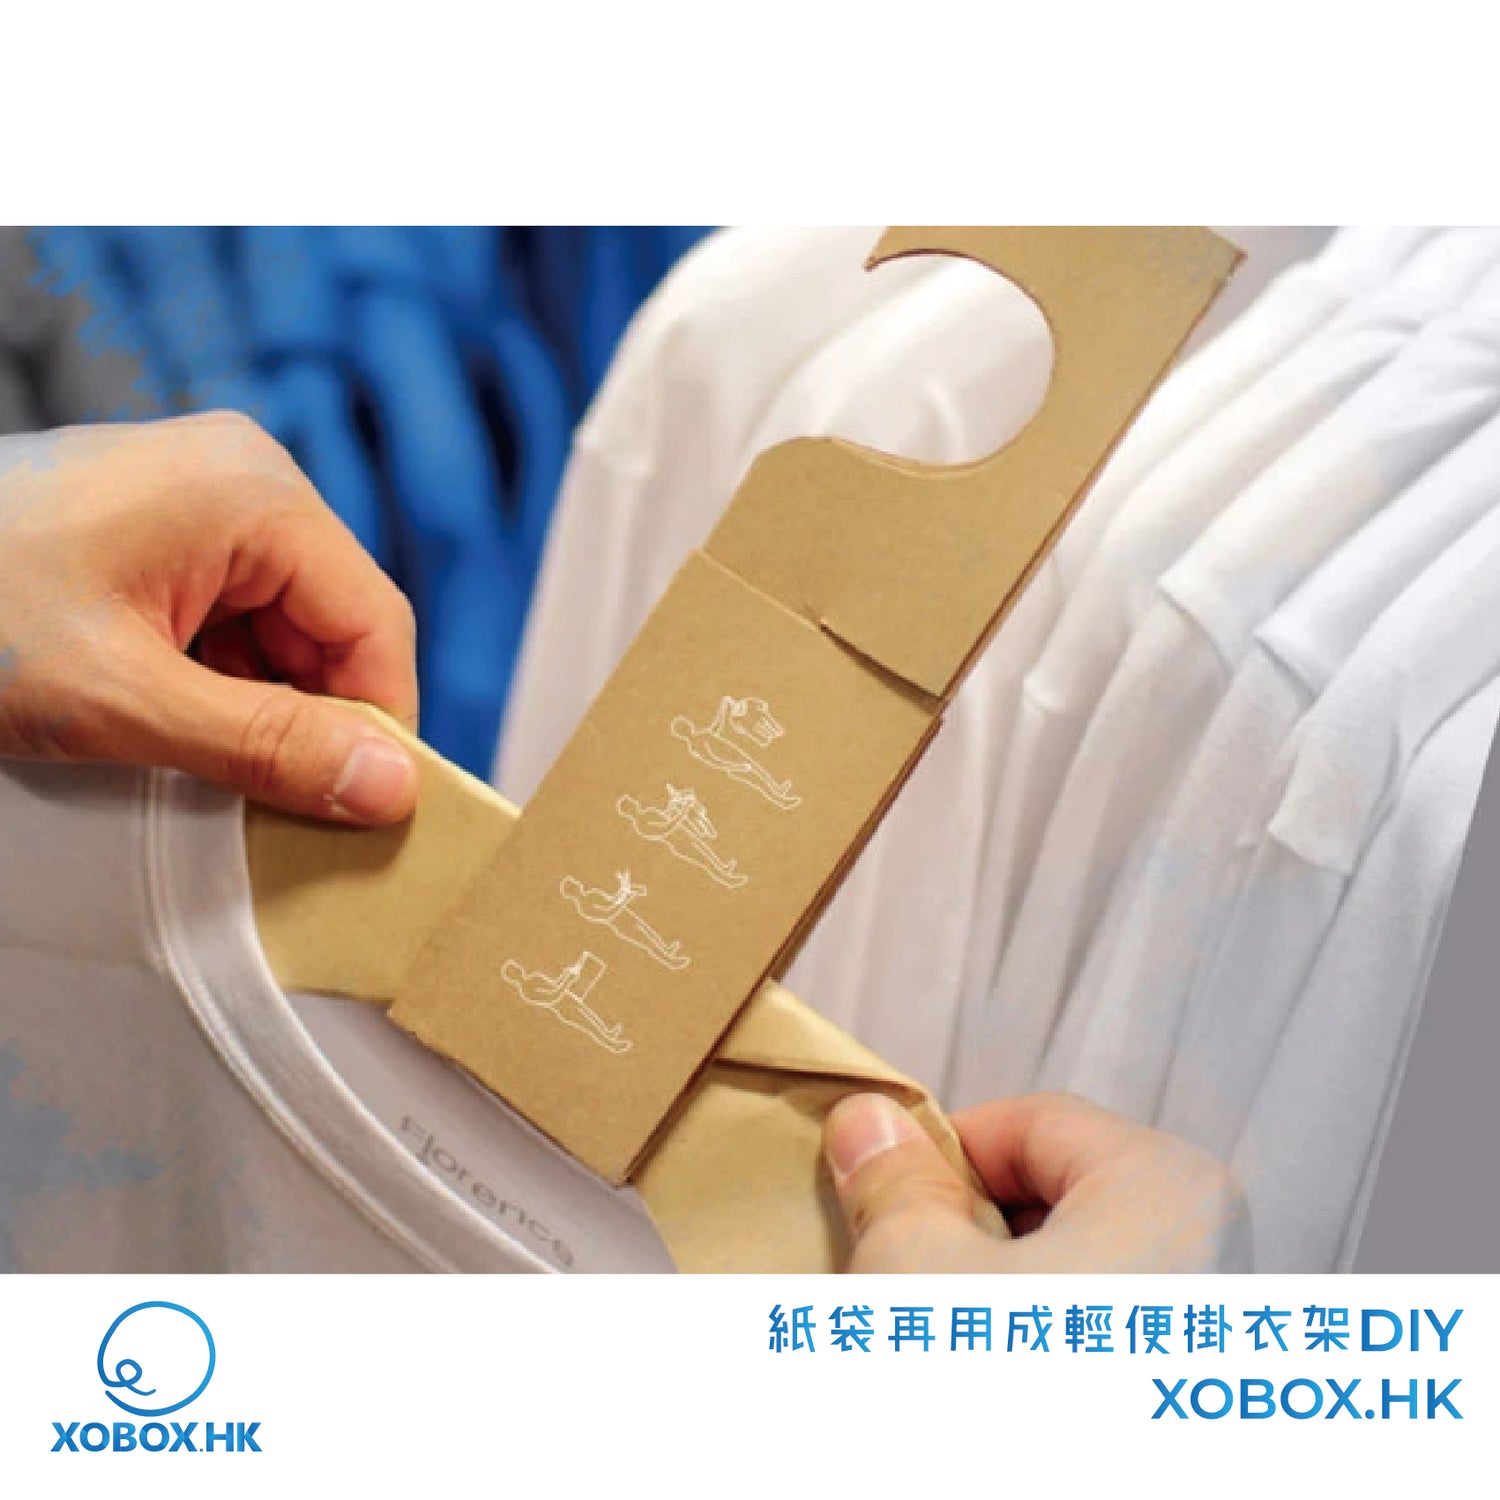 紙袋再用成輕便掛衣架DIY | XOBOX.HK